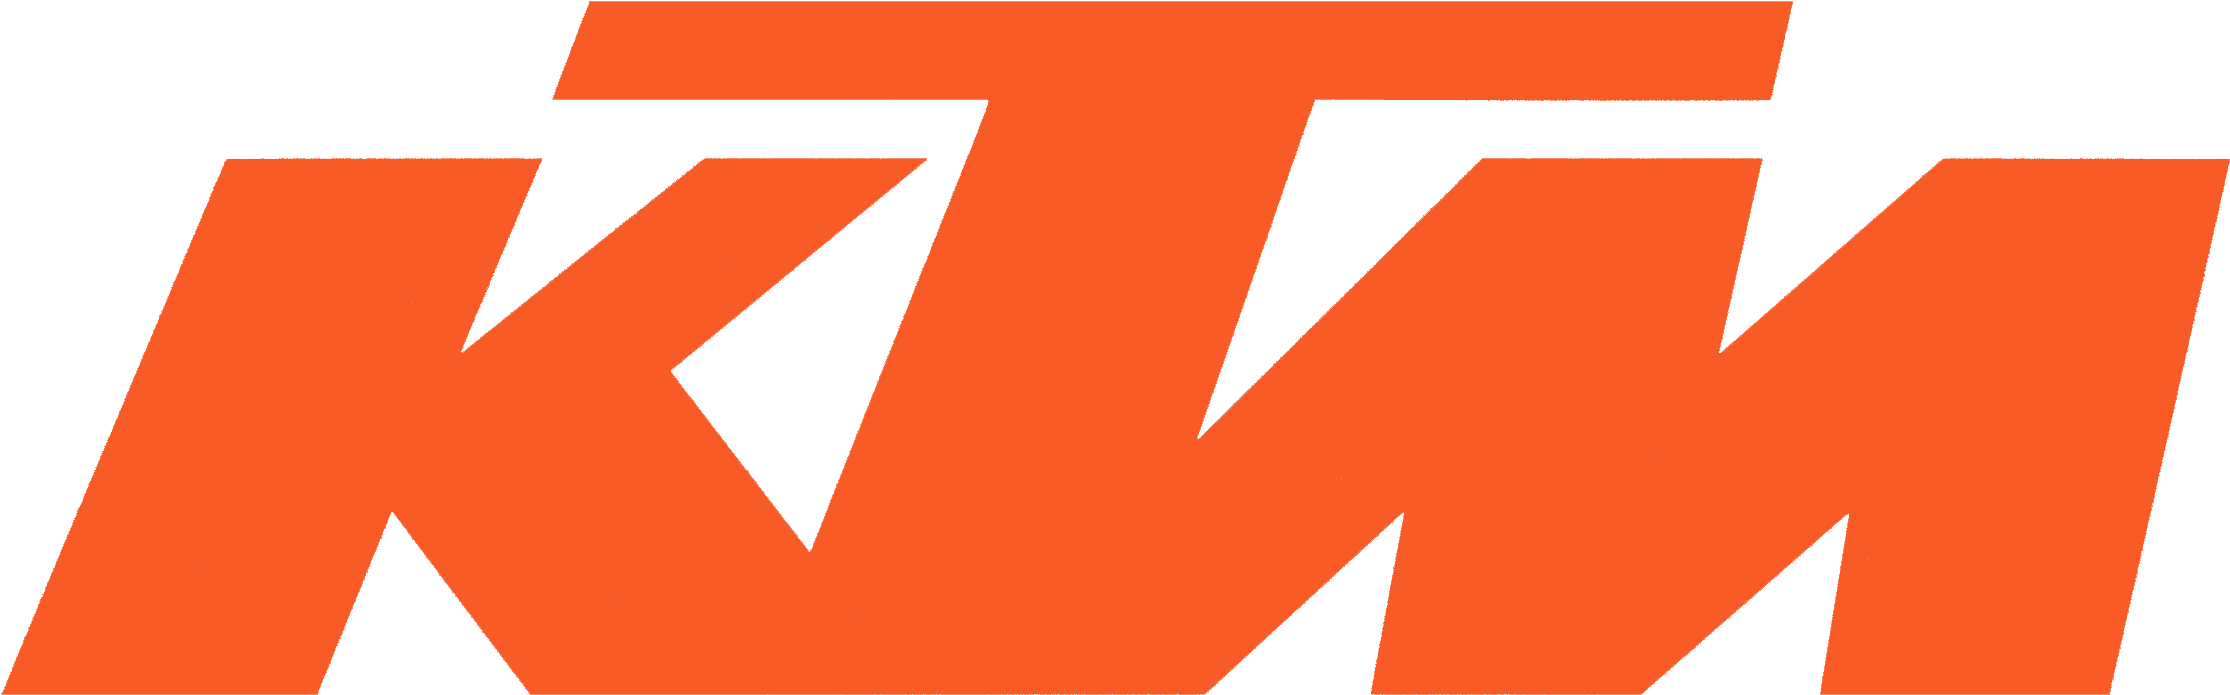 Kawasaki - Ktm Logo Hd (2259x729), Png Download